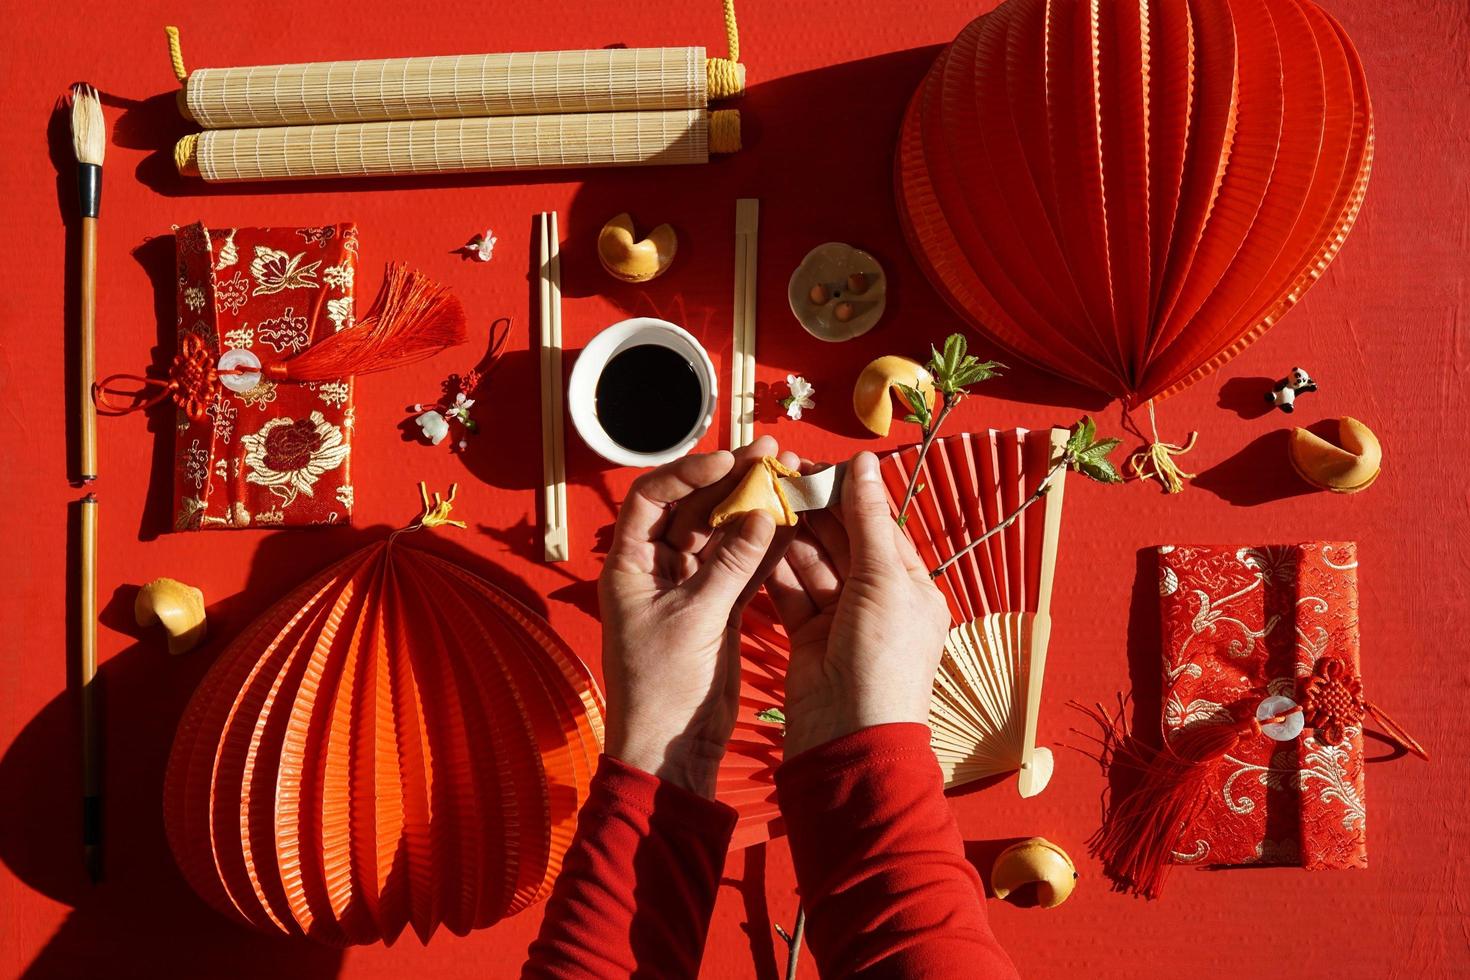 biscoito da sorte e objetos decorativos chineses, fundo vermelho foto